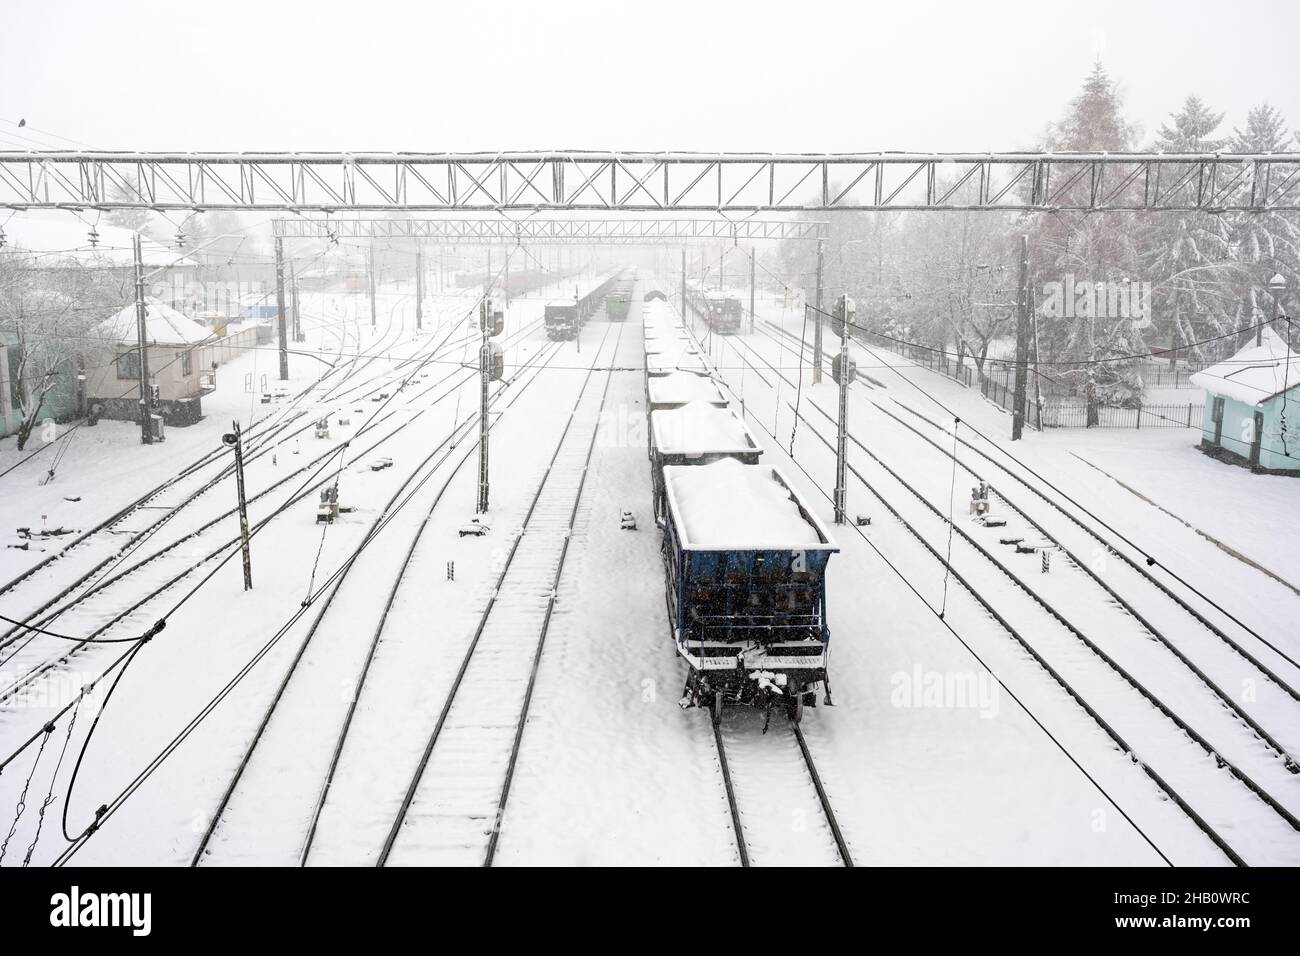 Bahnhof mit Eisenbahn im Winter von Schnee bedeckt. Güterwagen mit Kohle im Vordergrund. Ukraine, Europa Stockfoto